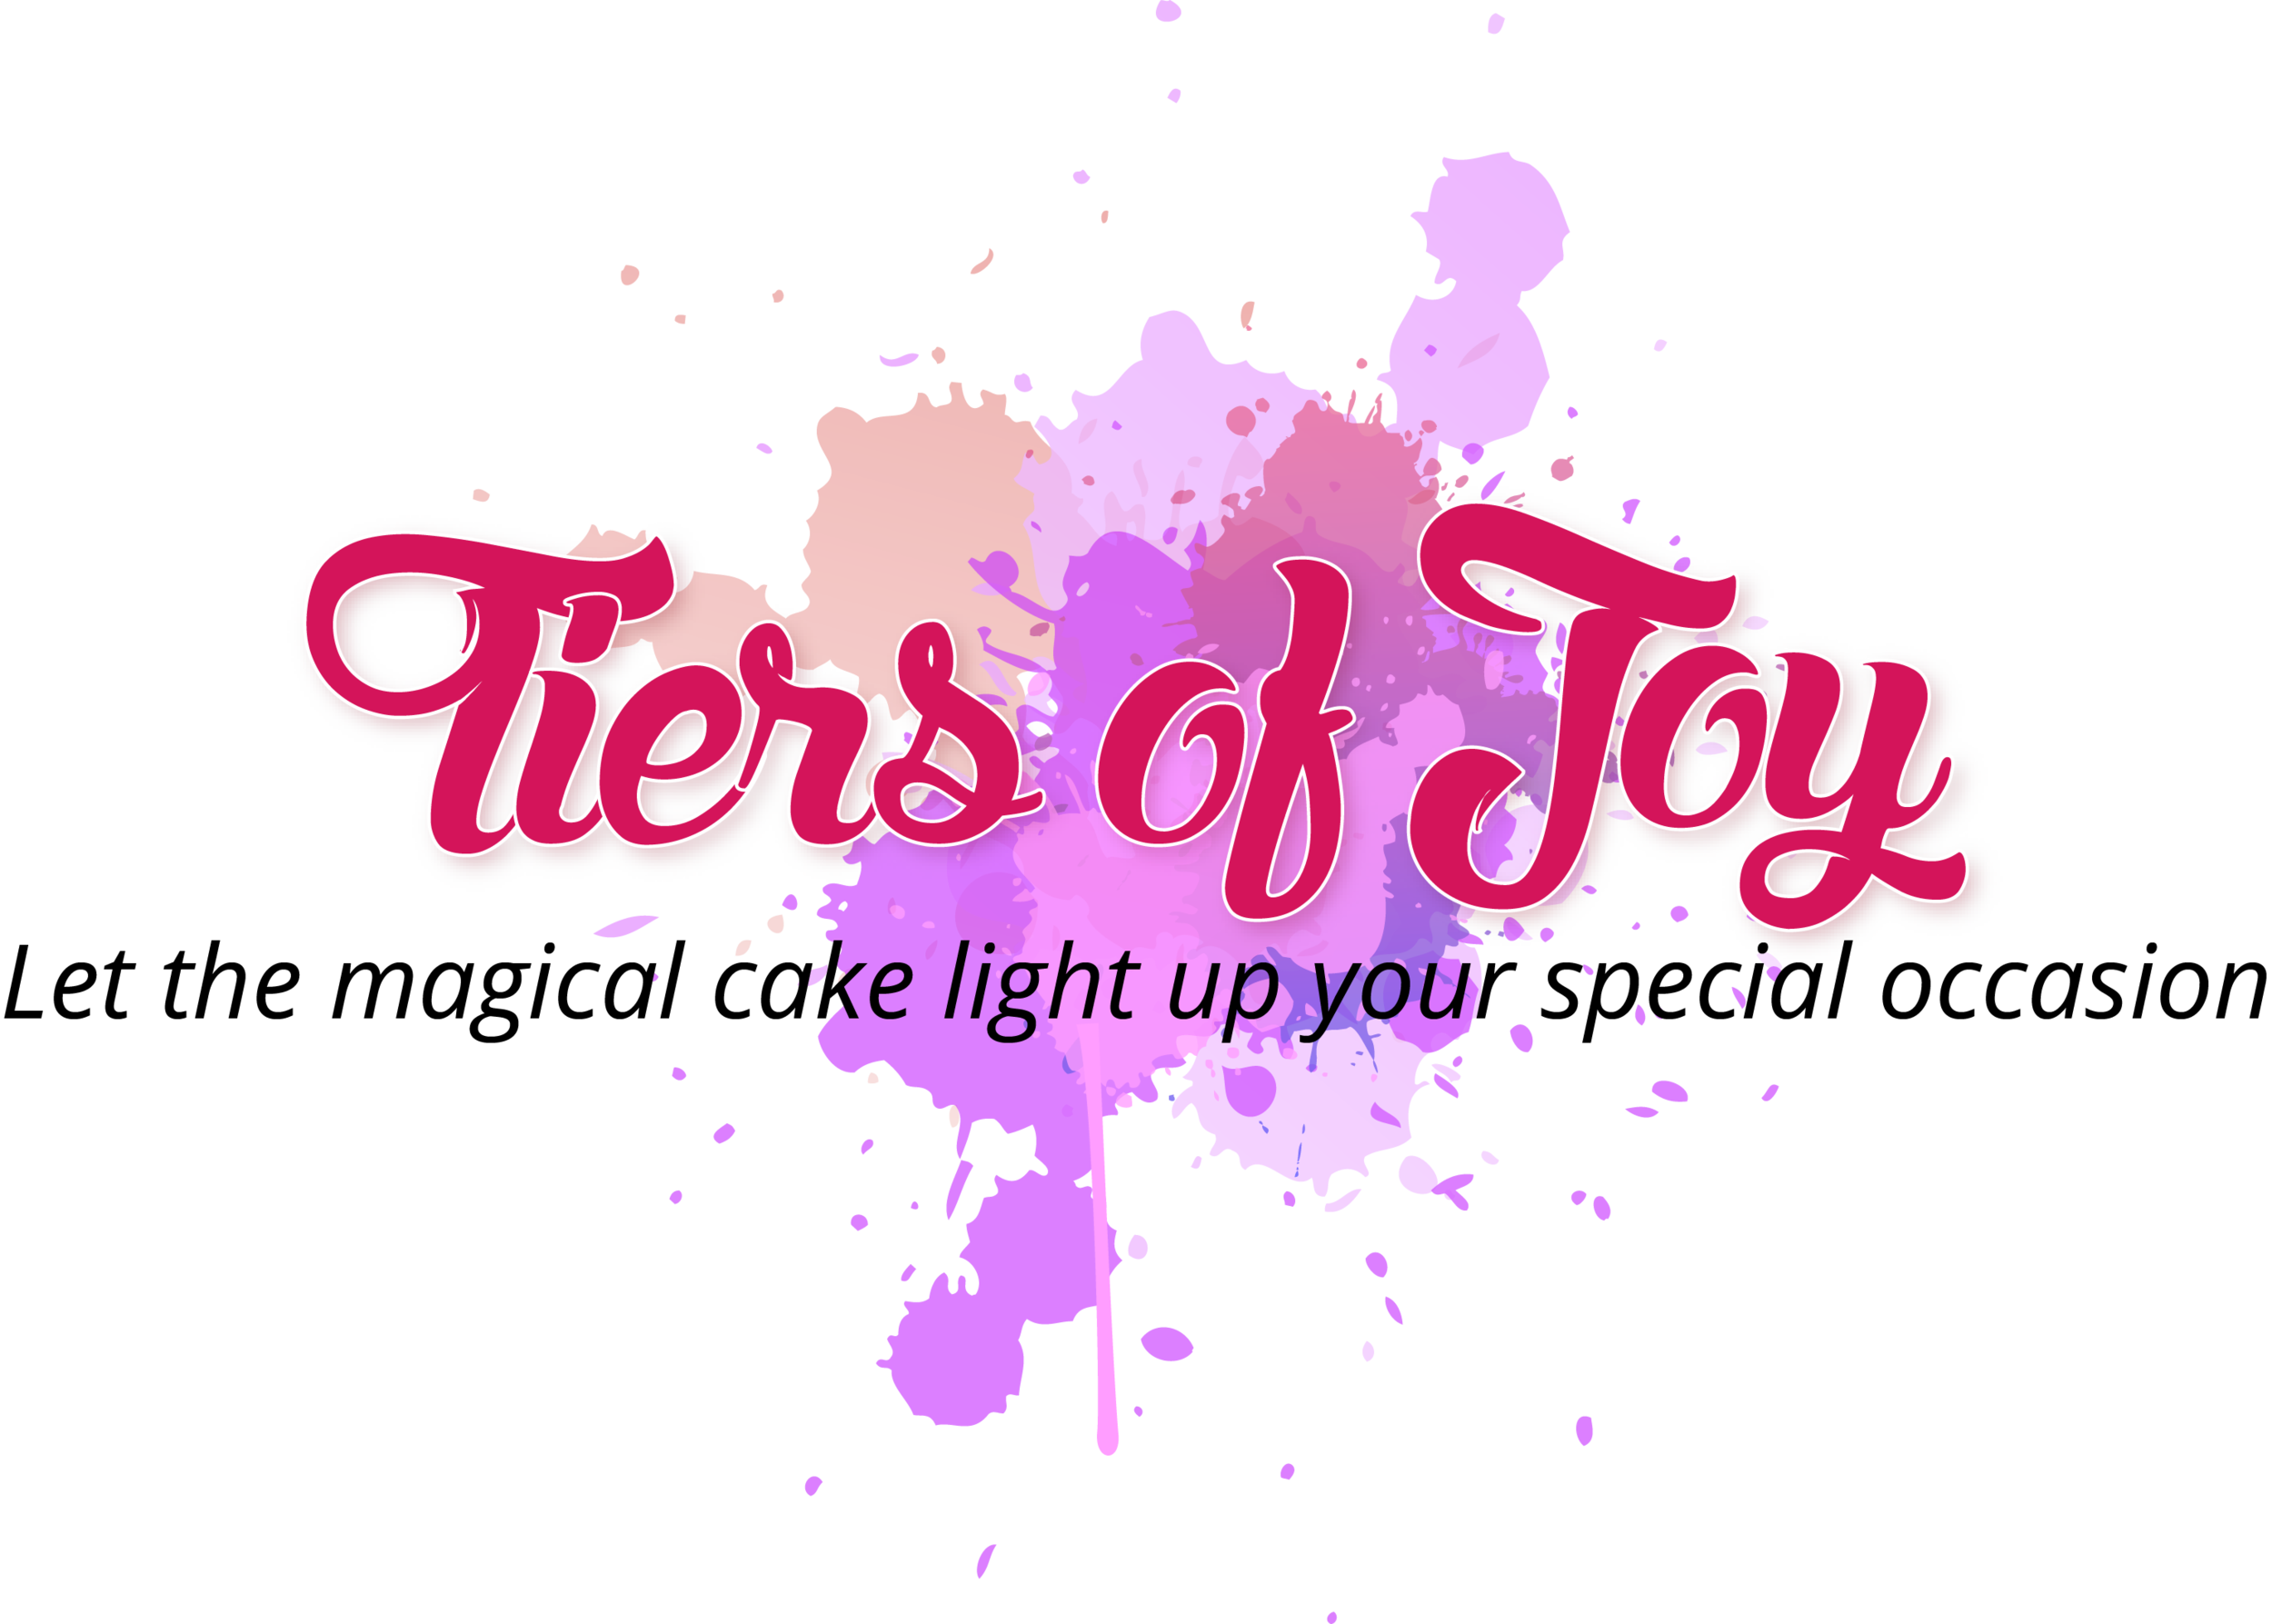 Tiers of Joy